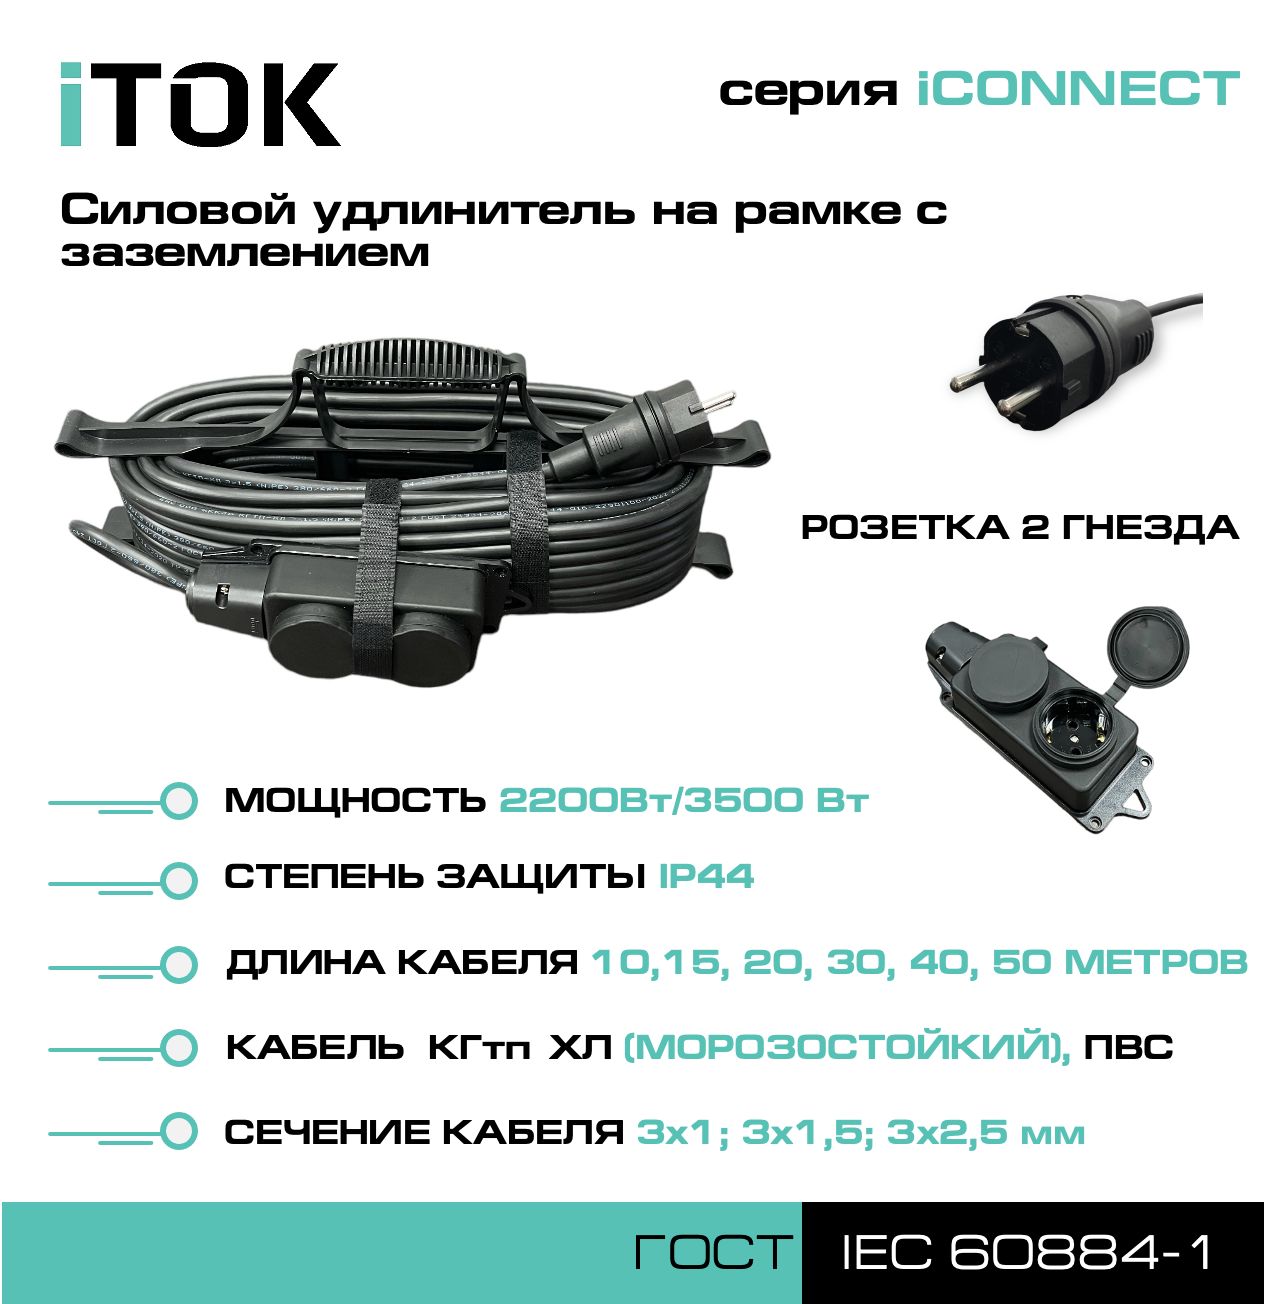 Удлинитель на рамке с заземлением серии iTOK iCONNECT КГтп-ХЛ 3х1,5 мм 2 гнезда IP44 40 м